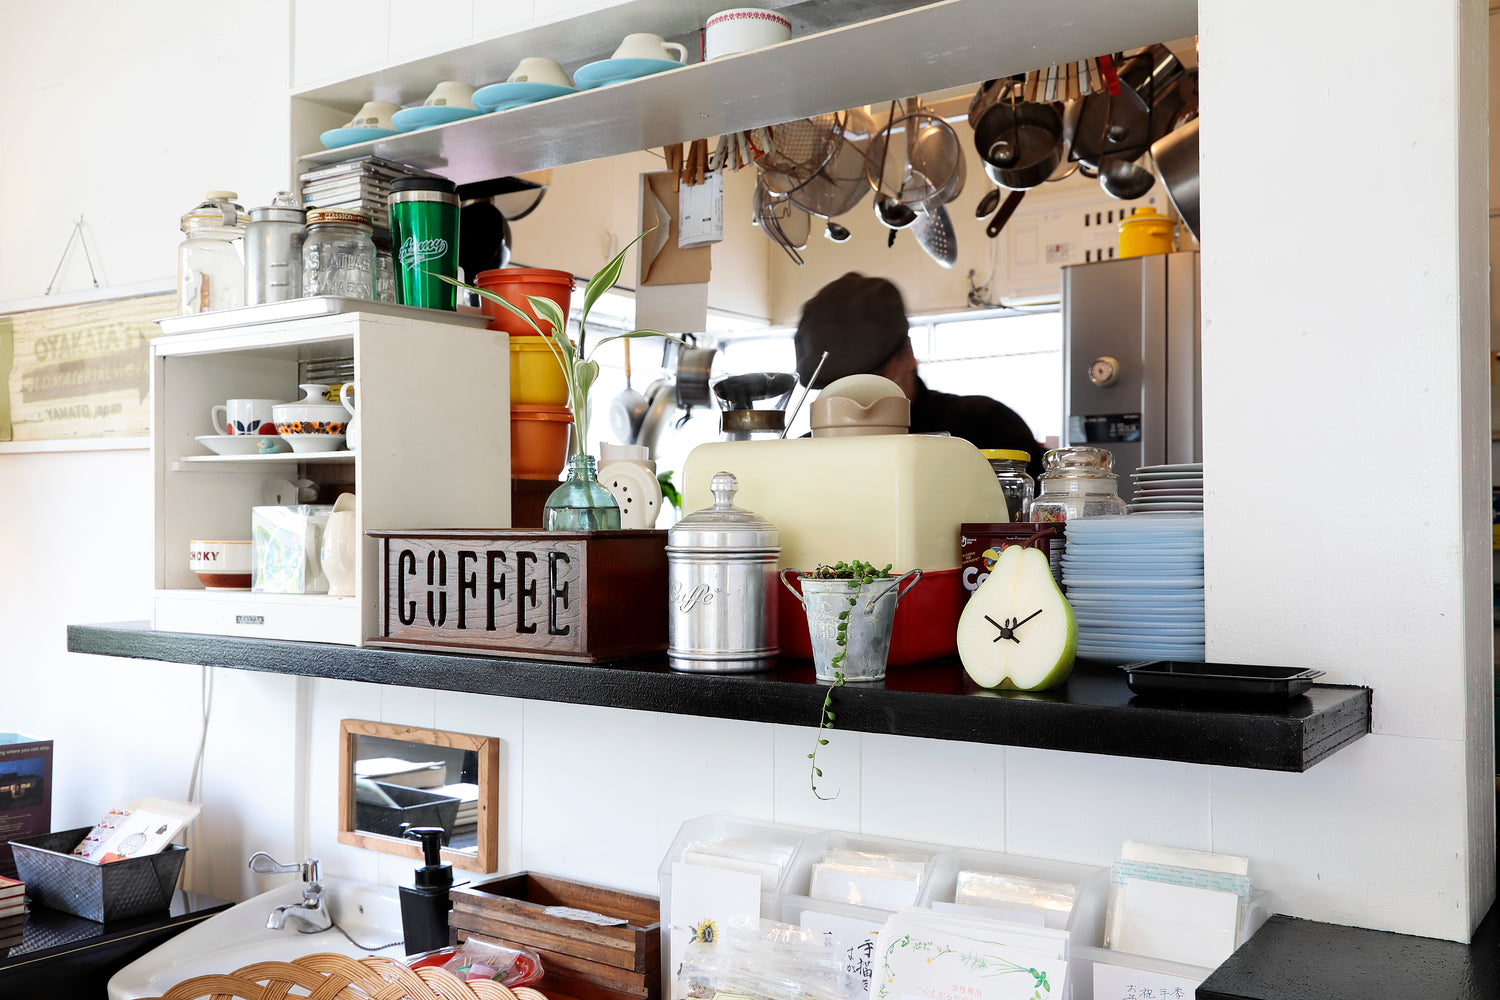 元祖食品サンプル屋「Replica Food Clock ラ・フランス」のキッチンの横に置いたイメージ画像です